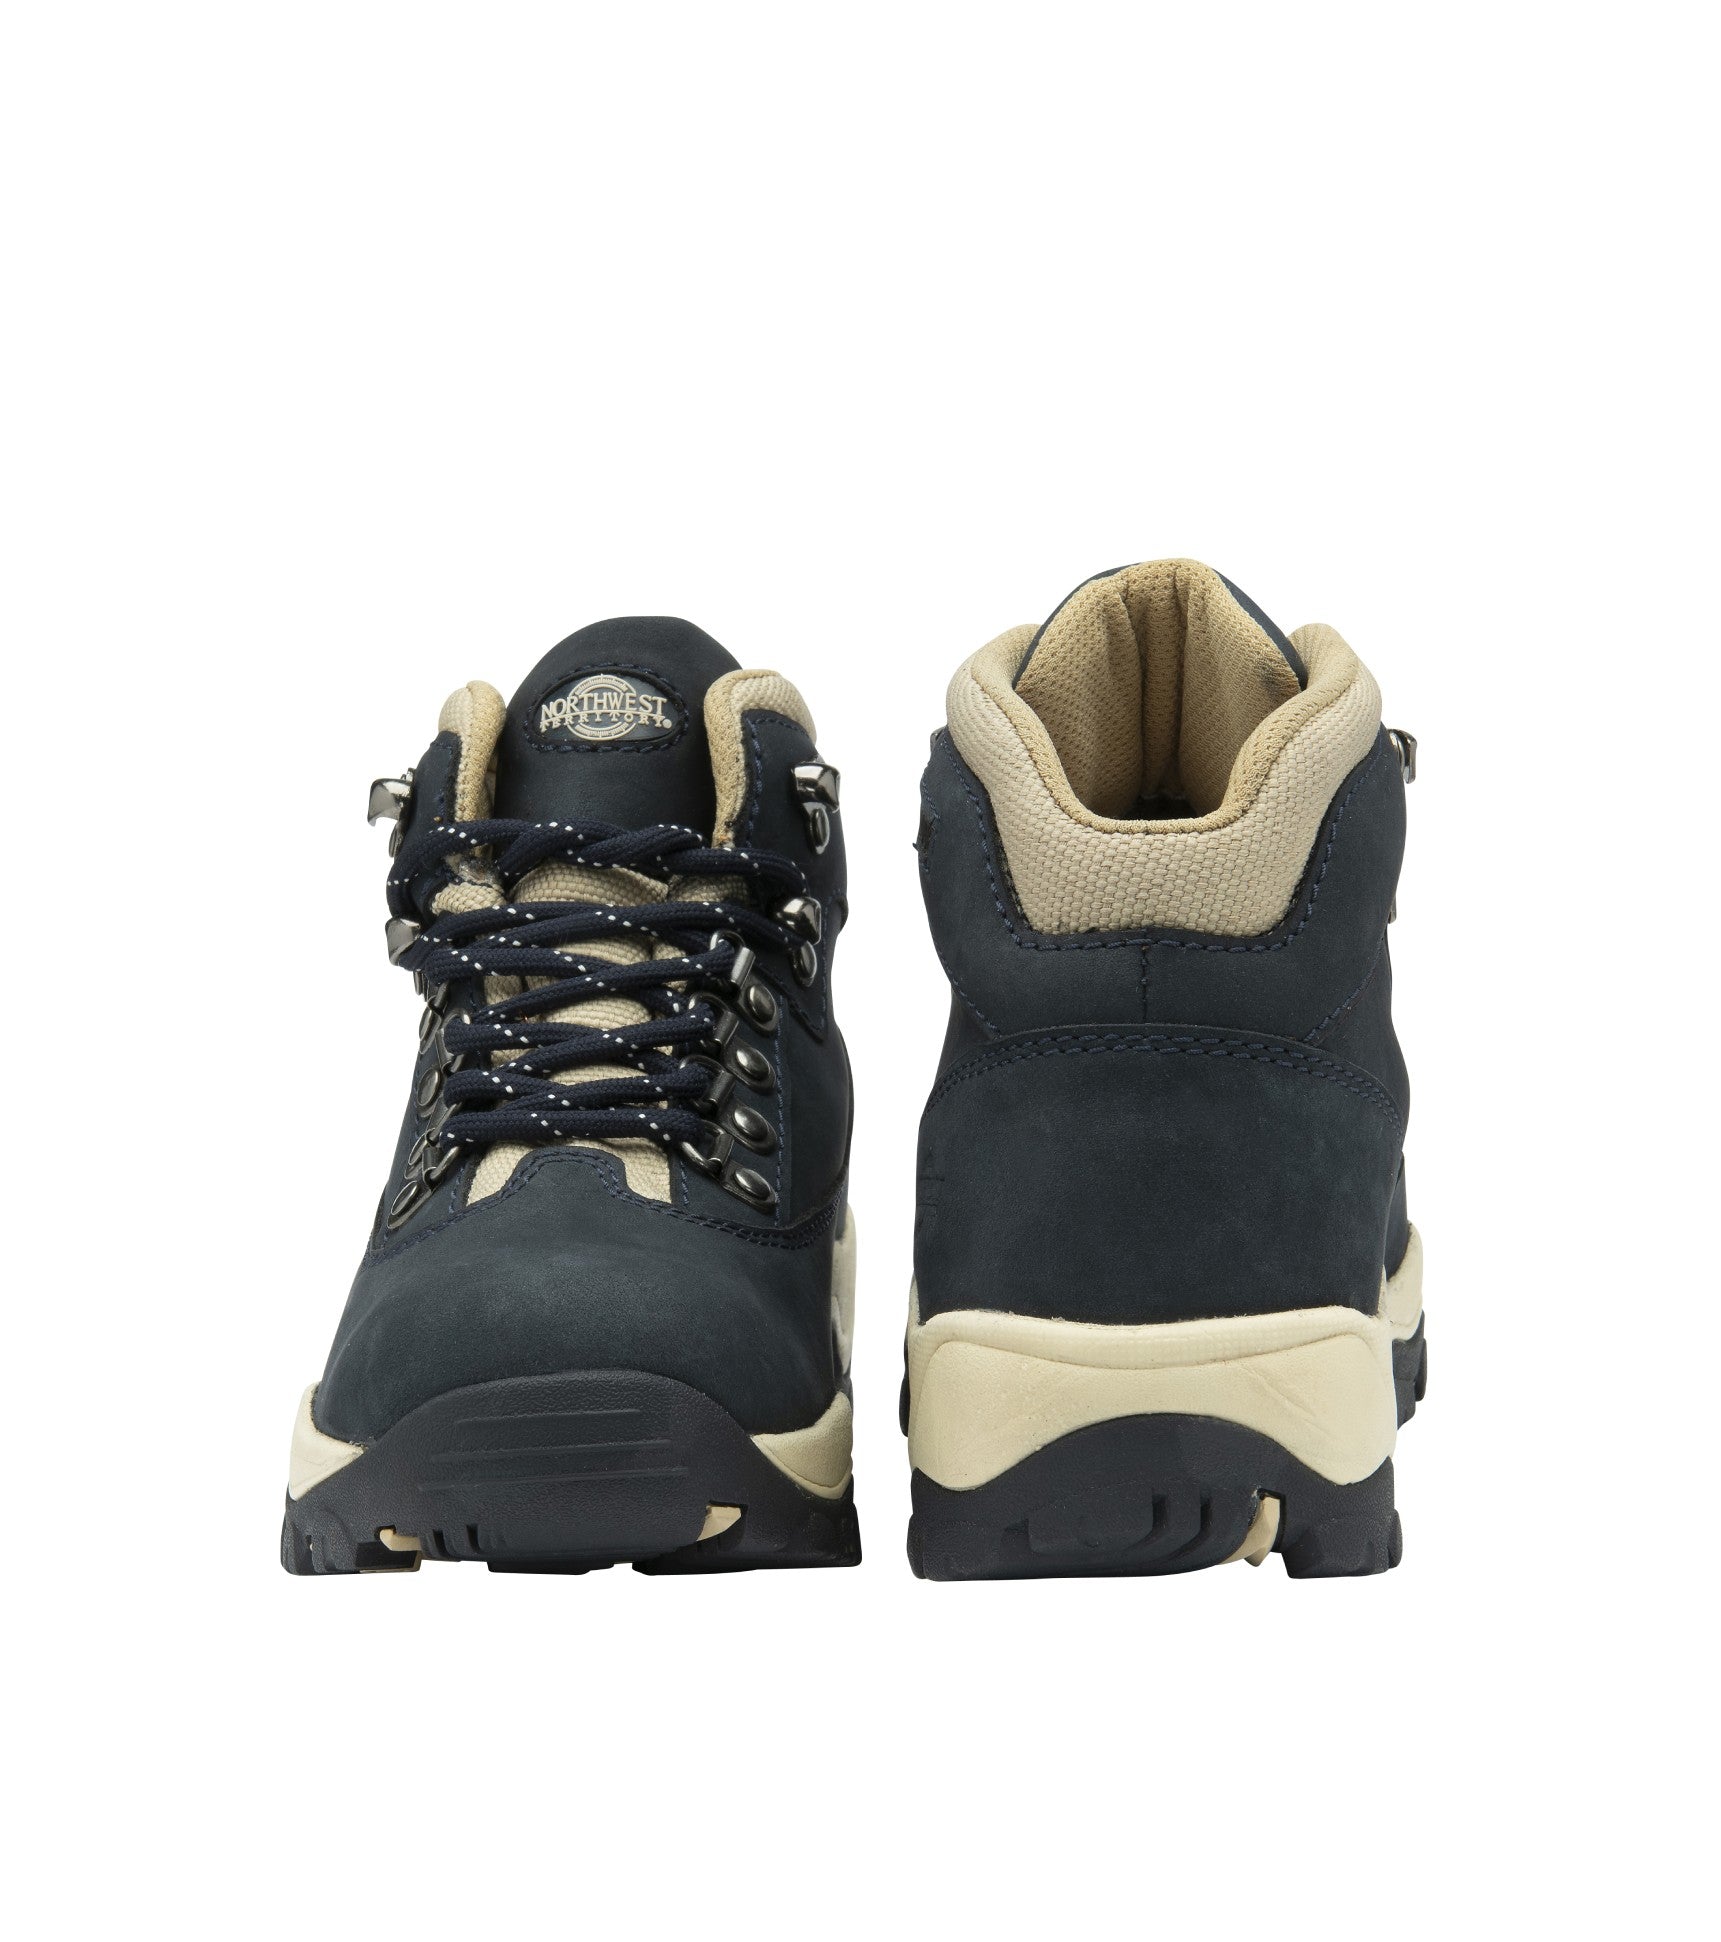 Women's Nubuck Leather Waterproof Walking Boots - Women's Nubuck Leather Waterproof Walking Boots